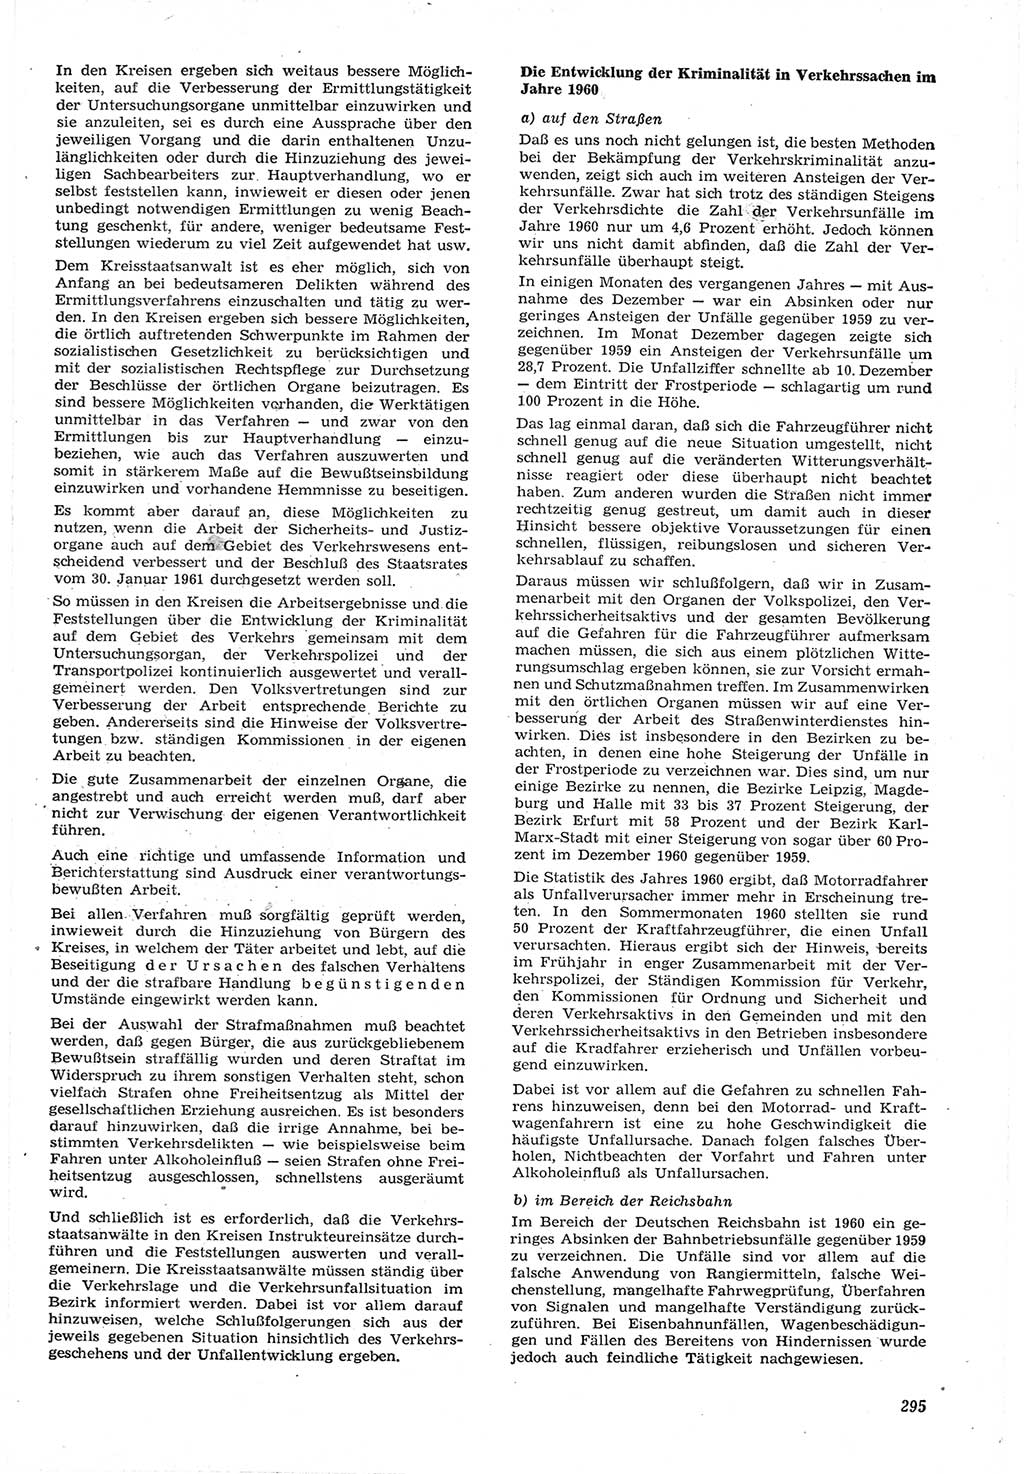 Neue Justiz (NJ), Zeitschrift für Recht und Rechtswissenschaft [Deutsche Demokratische Republik (DDR)], 15. Jahrgang 1961, Seite 295 (NJ DDR 1961, S. 295)